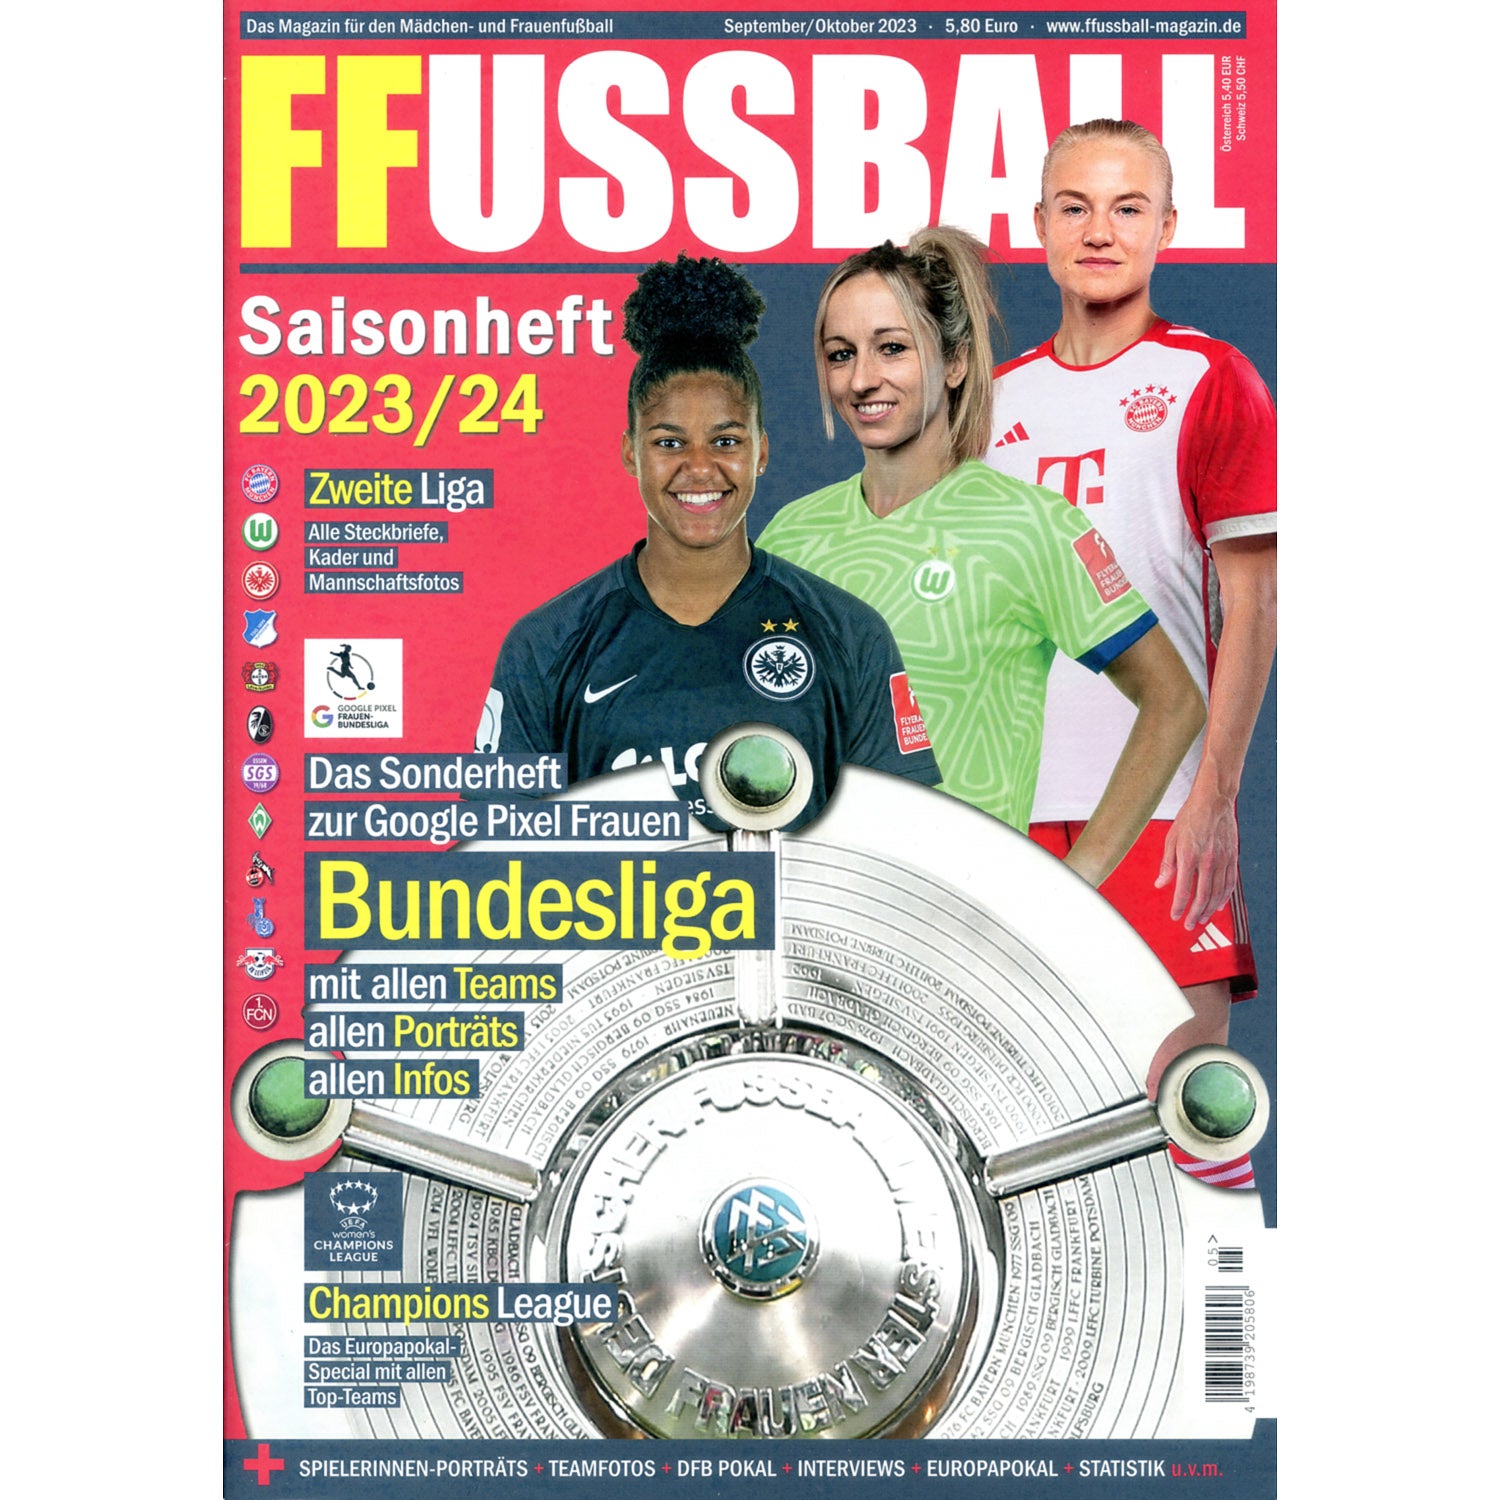 Frauen Fussball Saisonheft 2023/24 (German Women's Football Preview)